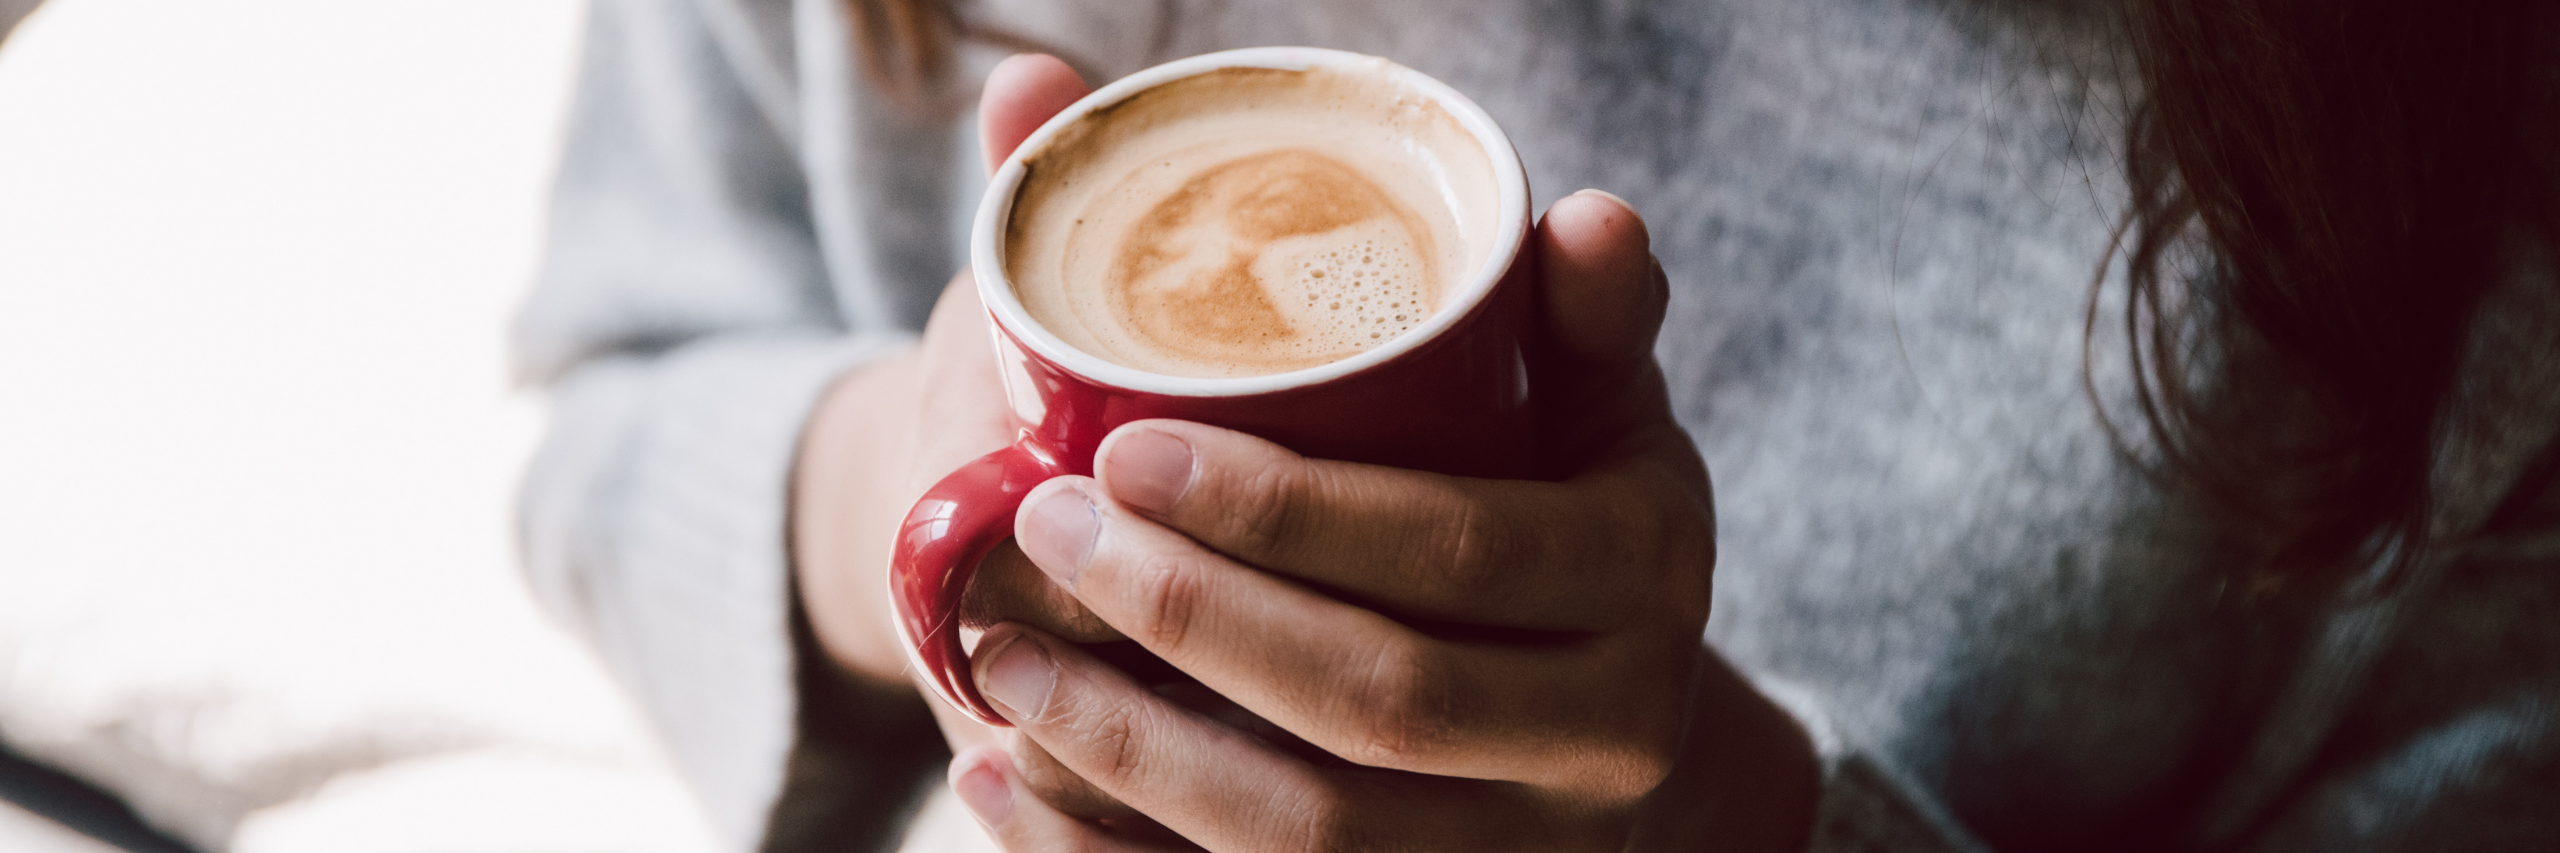 Kaffee und seine Wirkung auf Autoimmunbkrankheiten